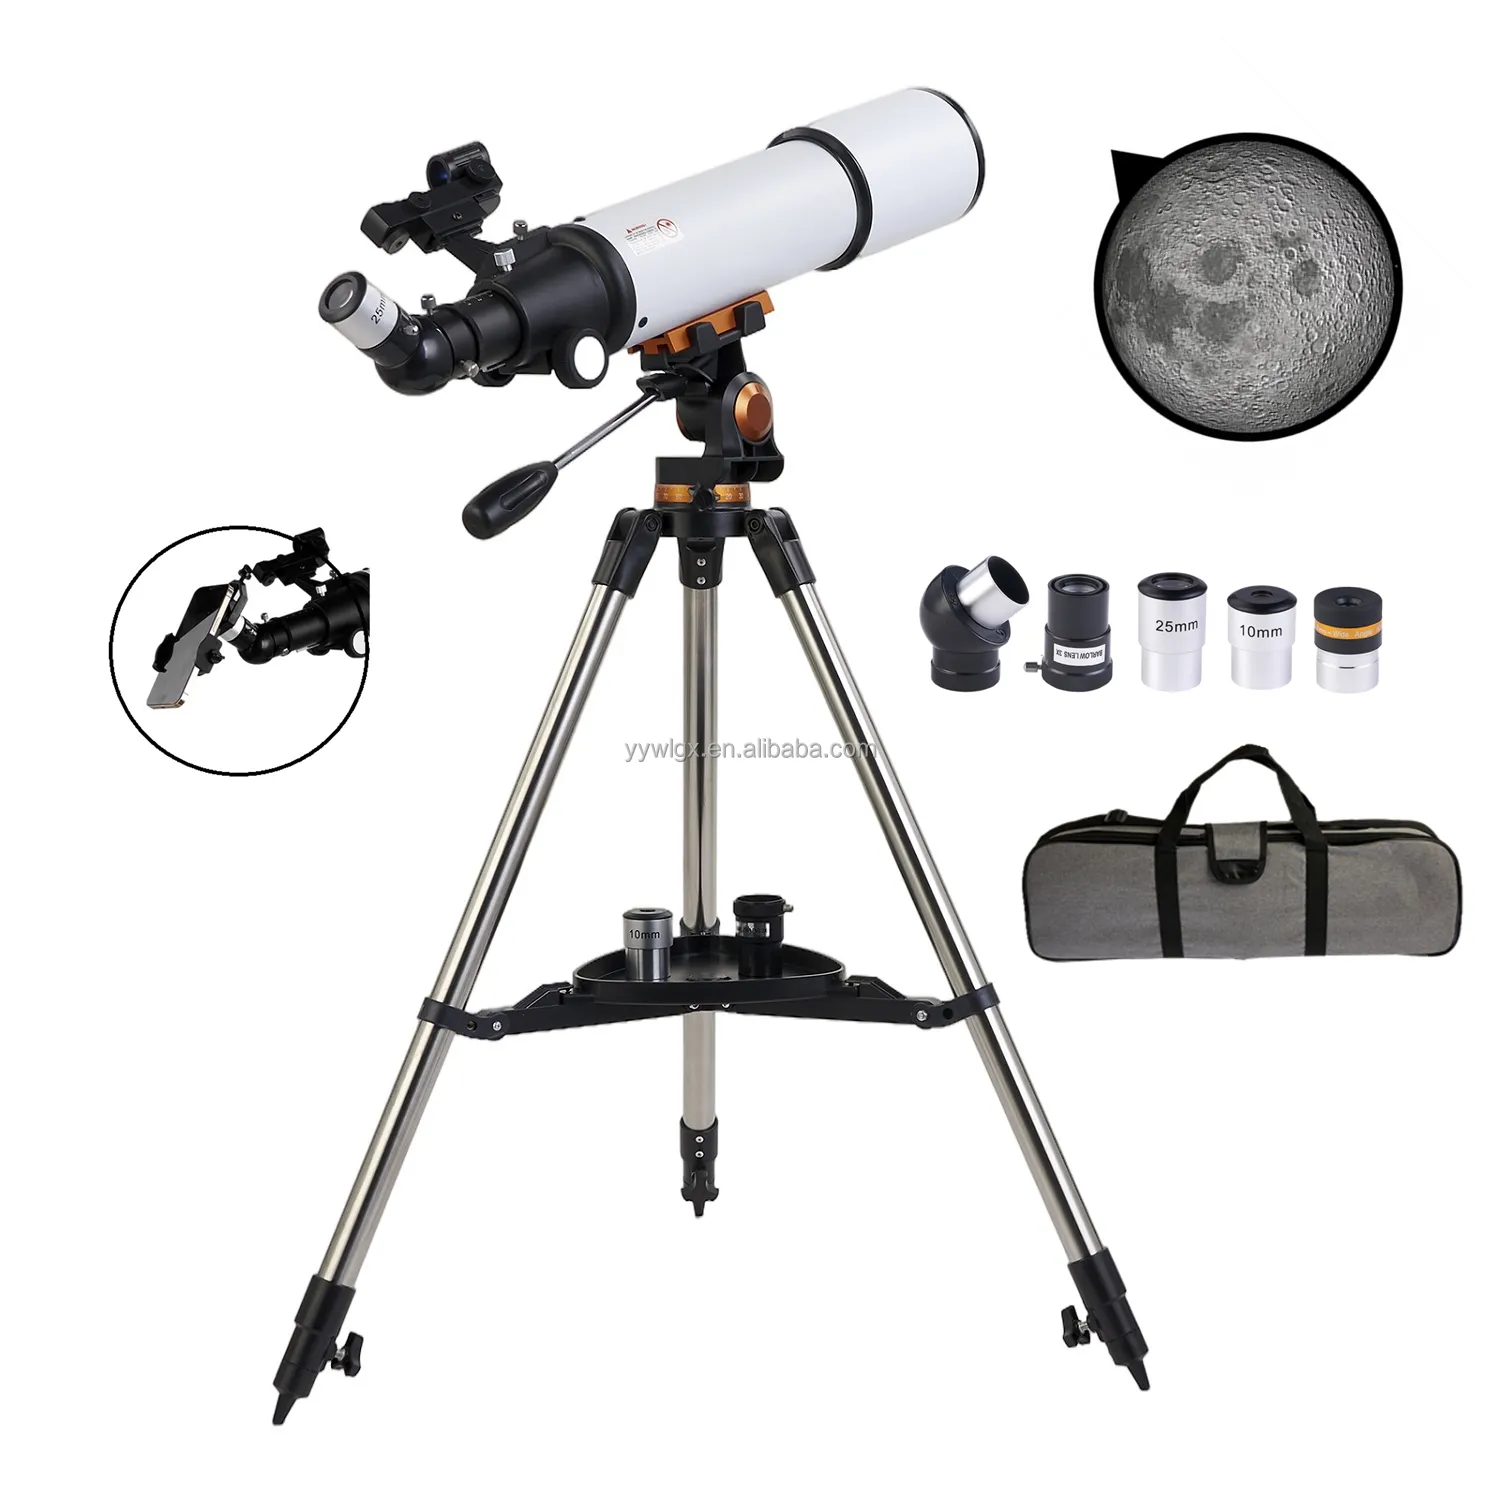 Télescope astronomique F50080m, Zoom professionnel, Vision nocturne, réfraction de l'espace profond, observation de la lune, astronomie